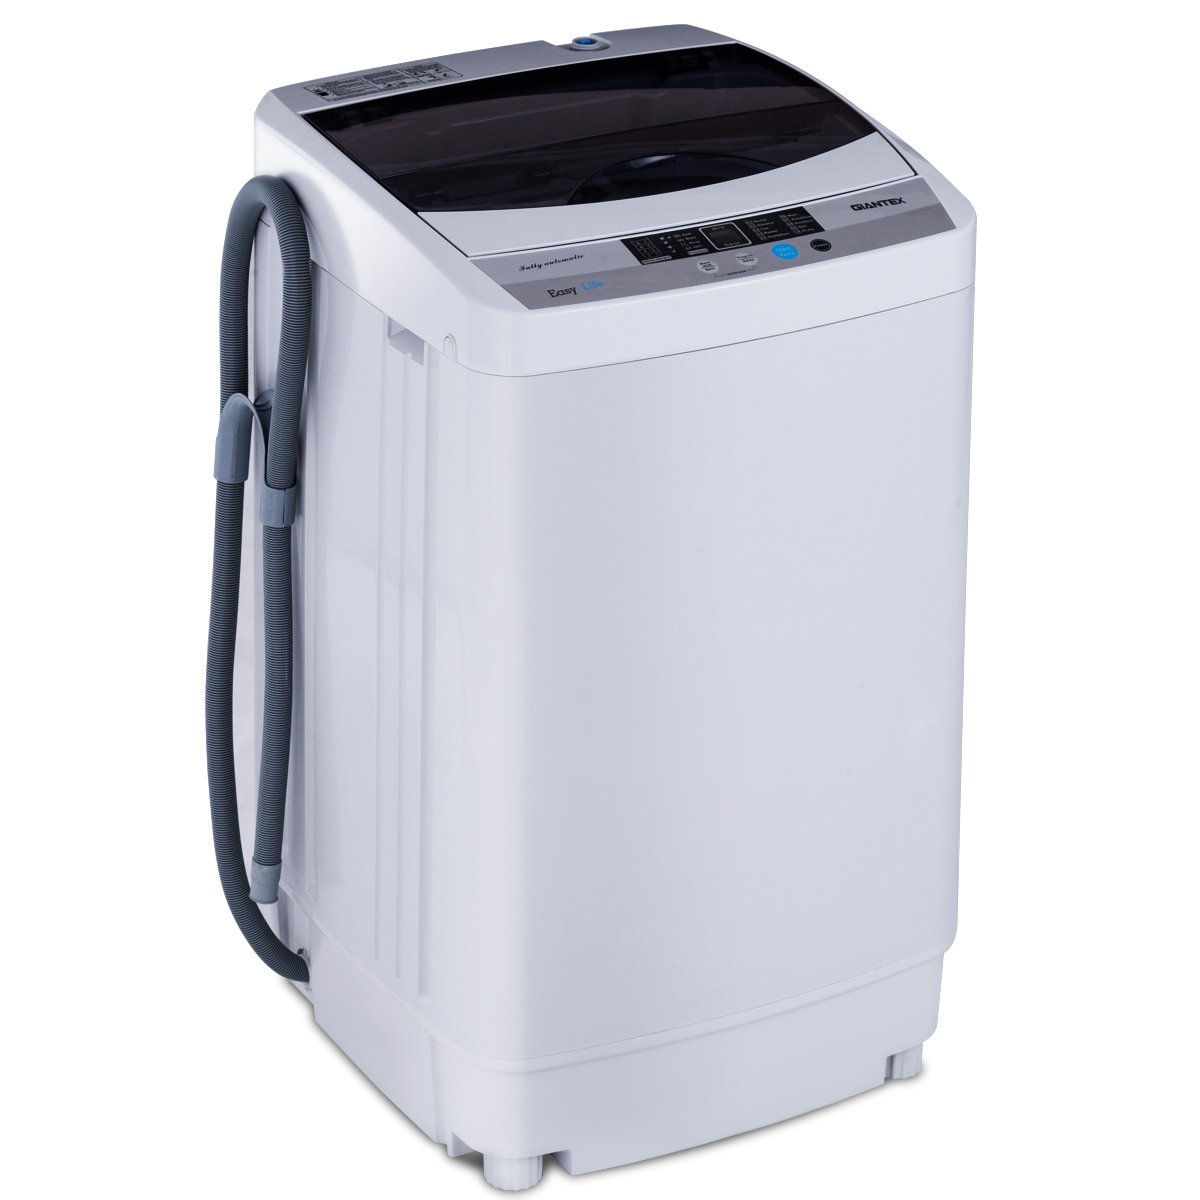 A+++ Miniwaschmaschine mit Schleuder,Toplader 10 Model Miniwaschmaschine vollautomatisch DREAMADE Waschvollautomat Waschmaschine 5,5kg Pump 